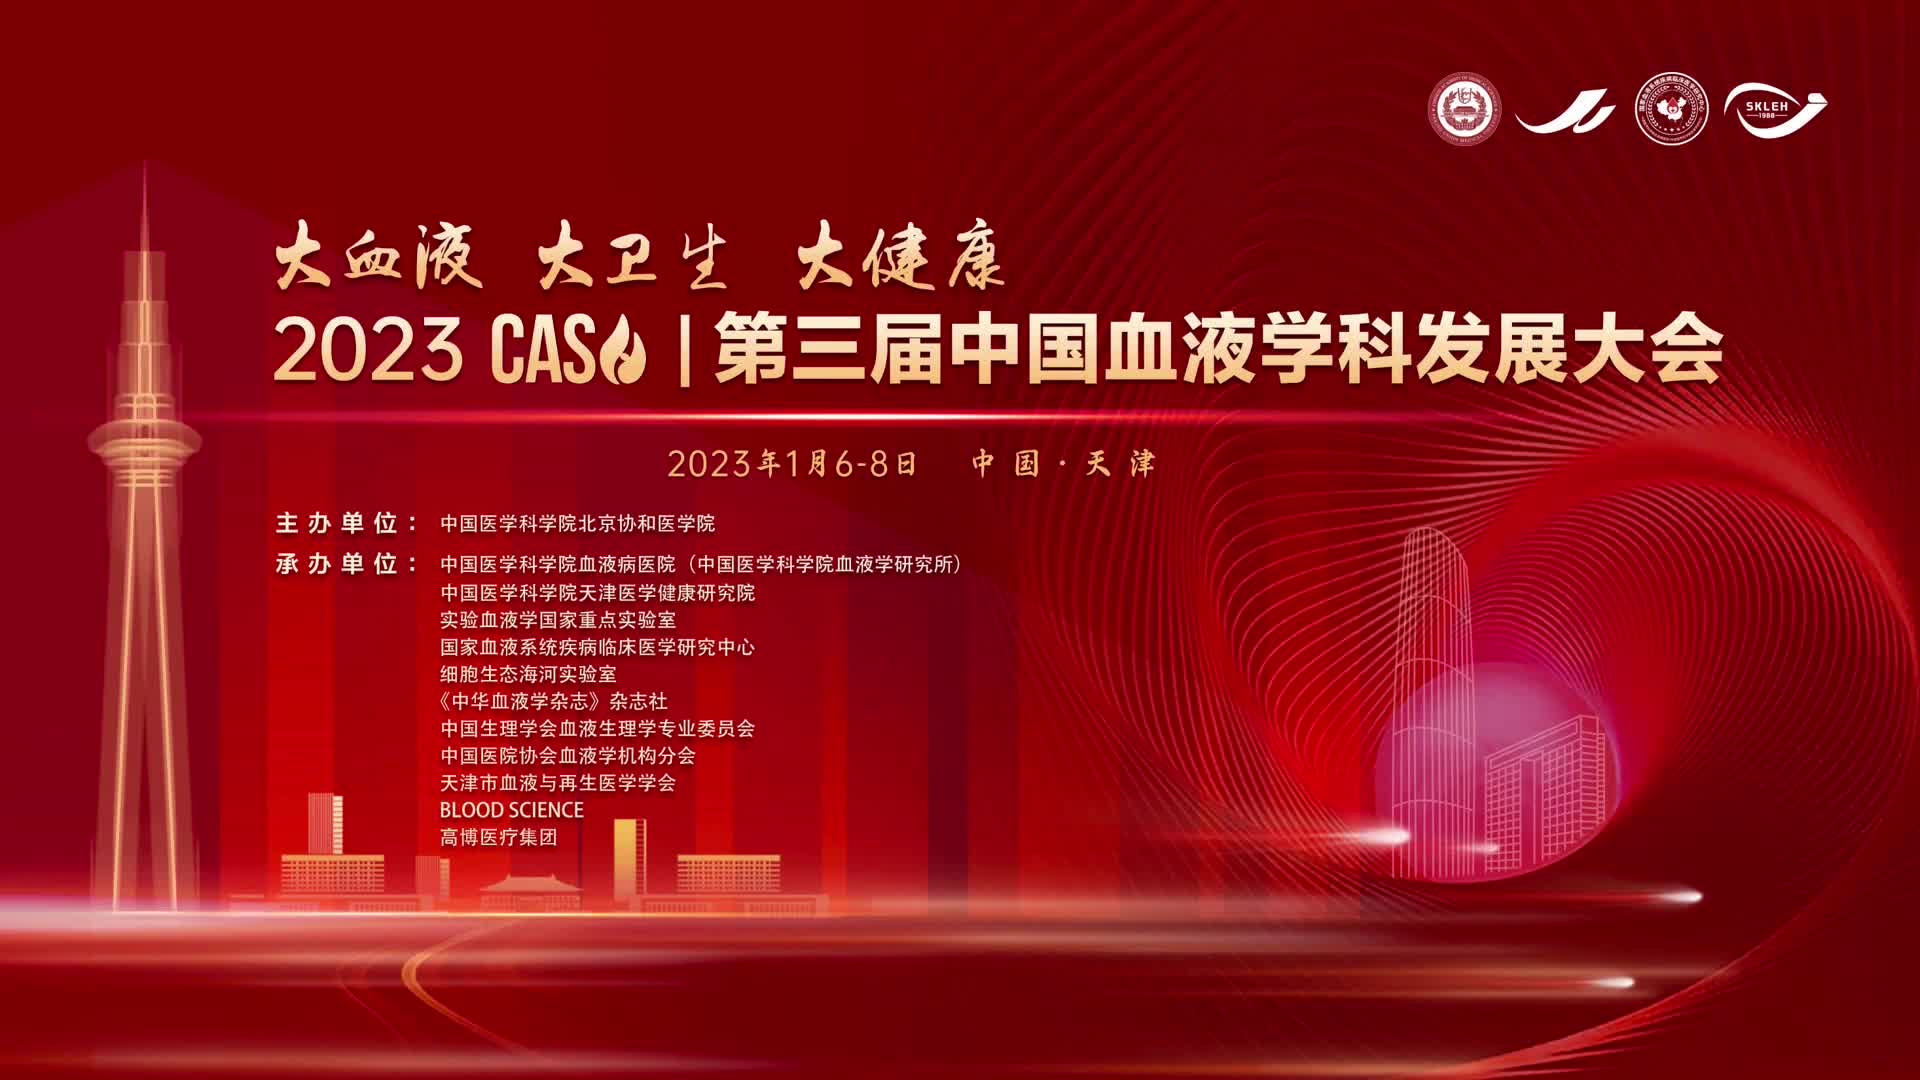 【闭幕式】2023 CASH | 第三届中国血液学科发展大会